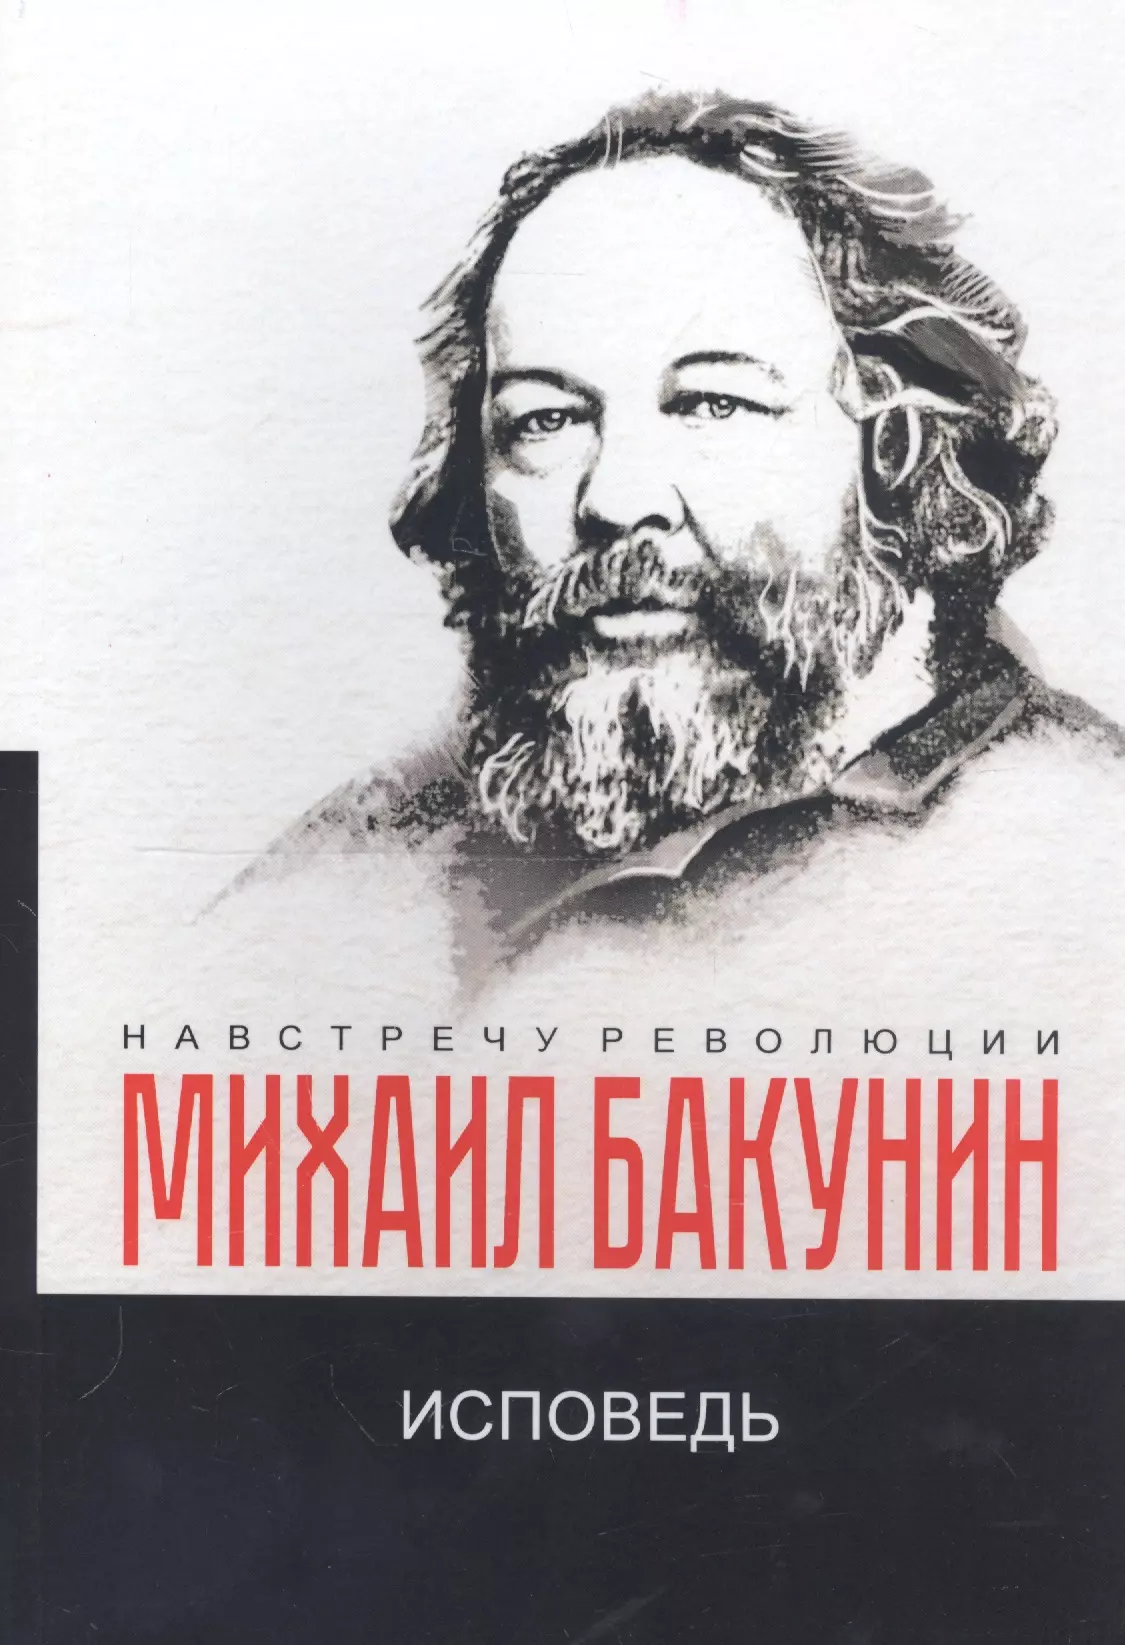 Бакунин Михаил Александрович - Исповедь